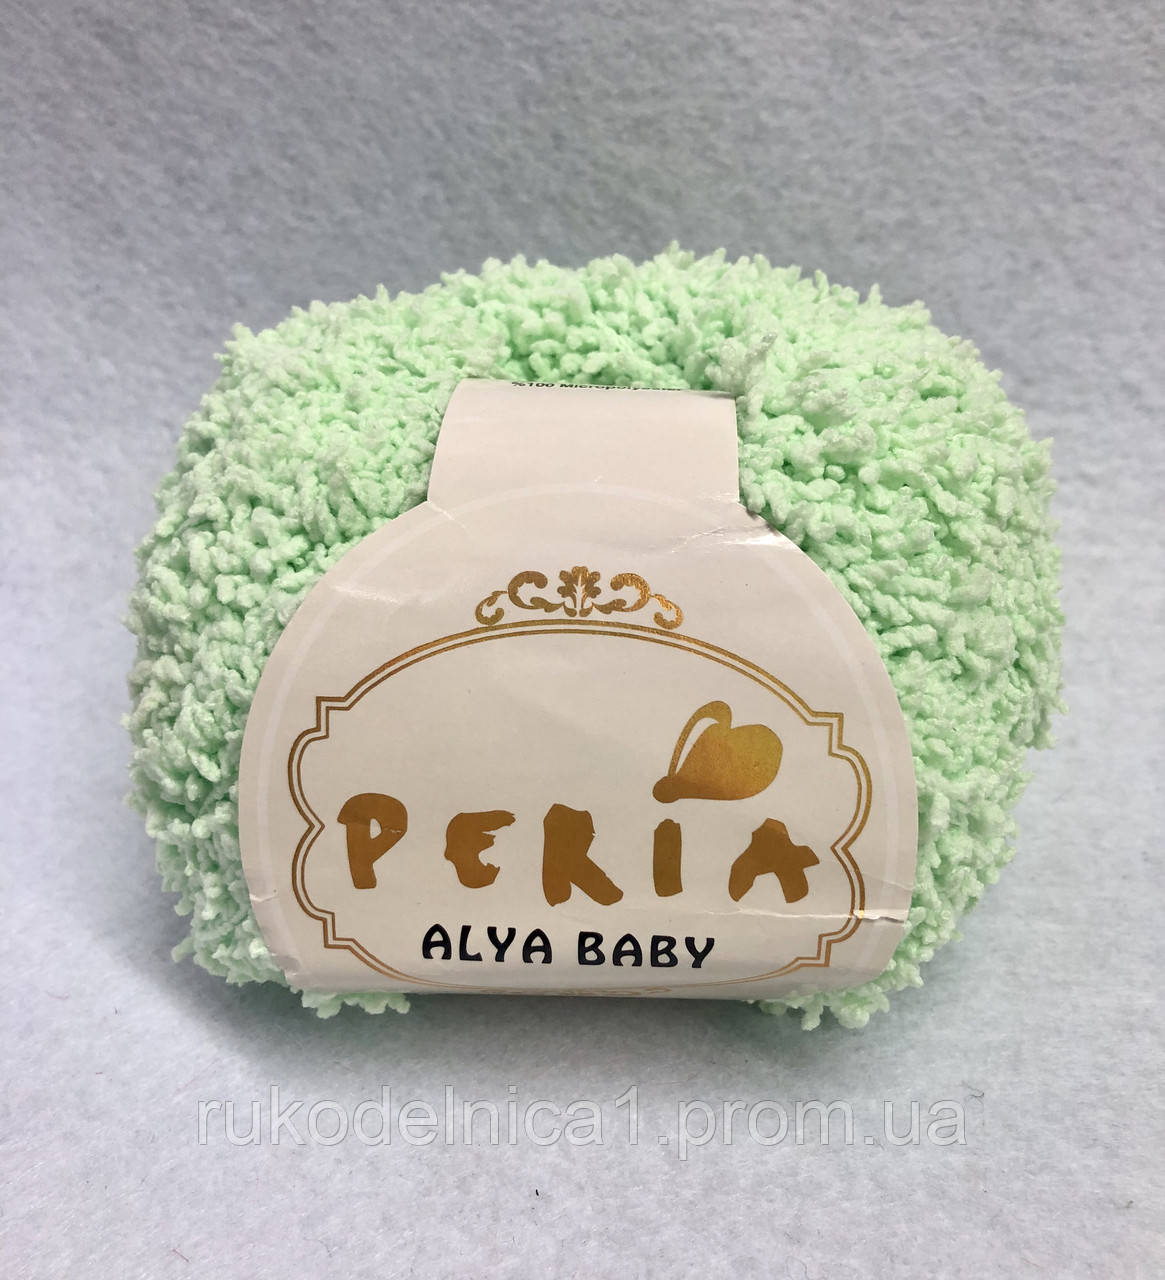 Пряжа Peria Alya Baby 50гр - 63м (М'ятний) 100% Мікрополіестр, Туреччина